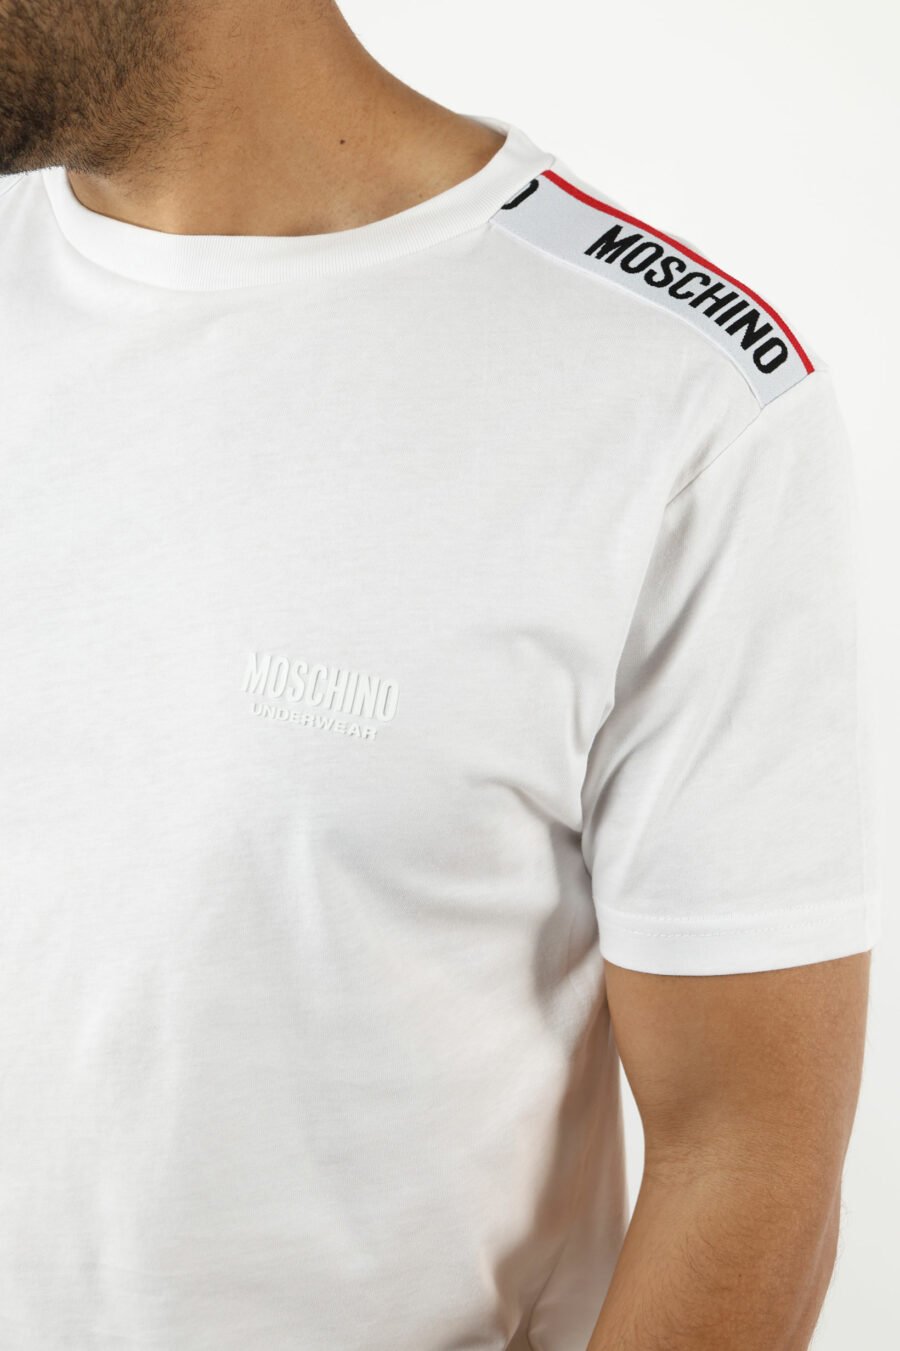 T-shirt blanc avec logo noir et ruban rouge sur les épaules - 110990